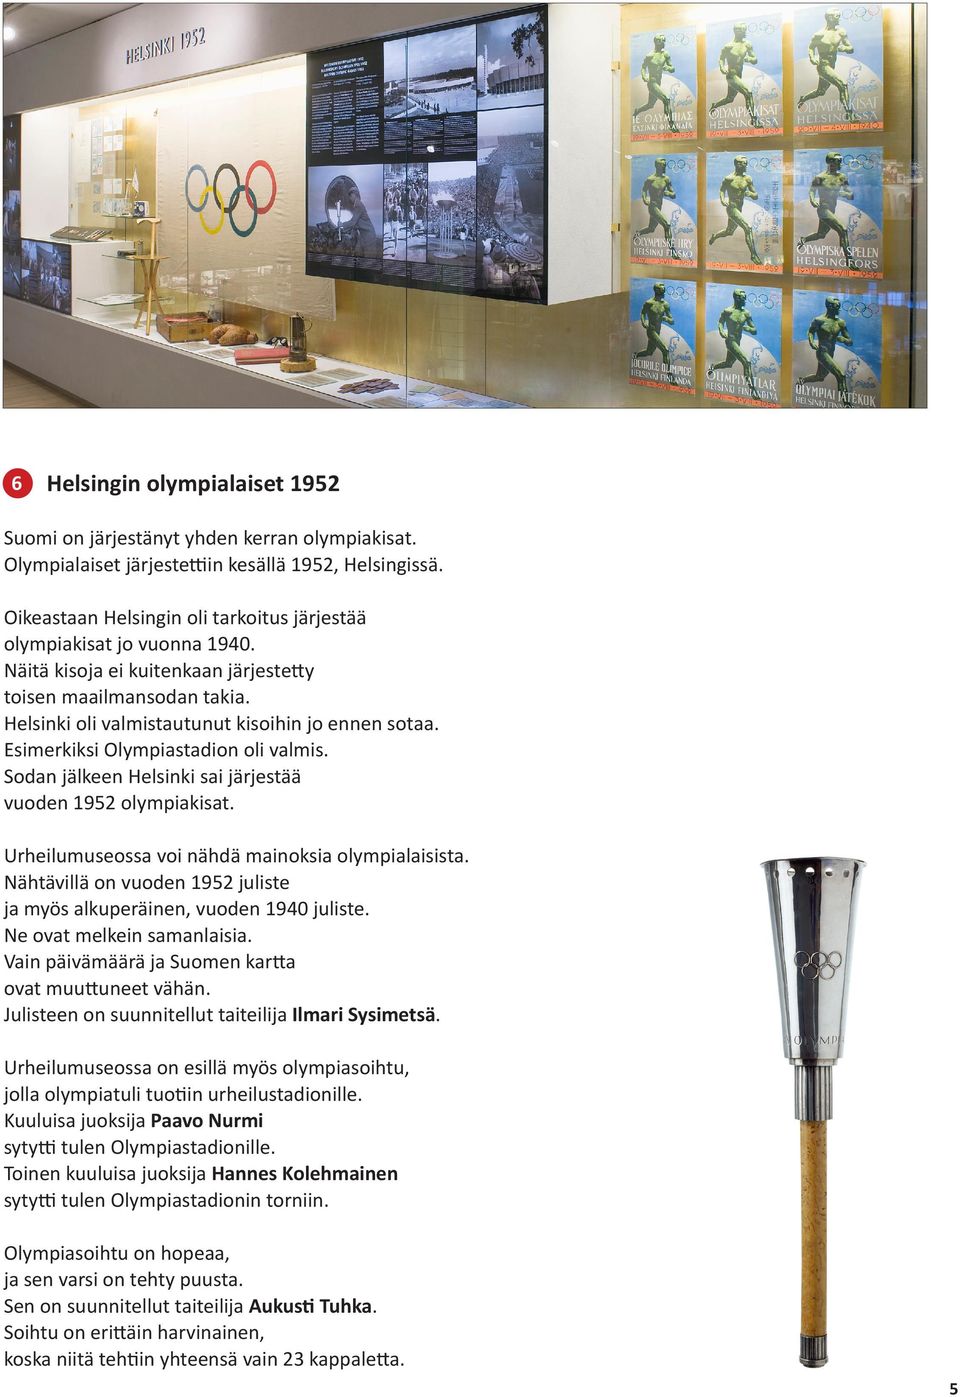 Esimerkiksi Olympiastadion oli valmis. Sodan jälkeen Helsinki sai järjestää vuoden 1952 olympiakisat. Urheilumuseossa voi nähdä mainoksia olympialaisista.